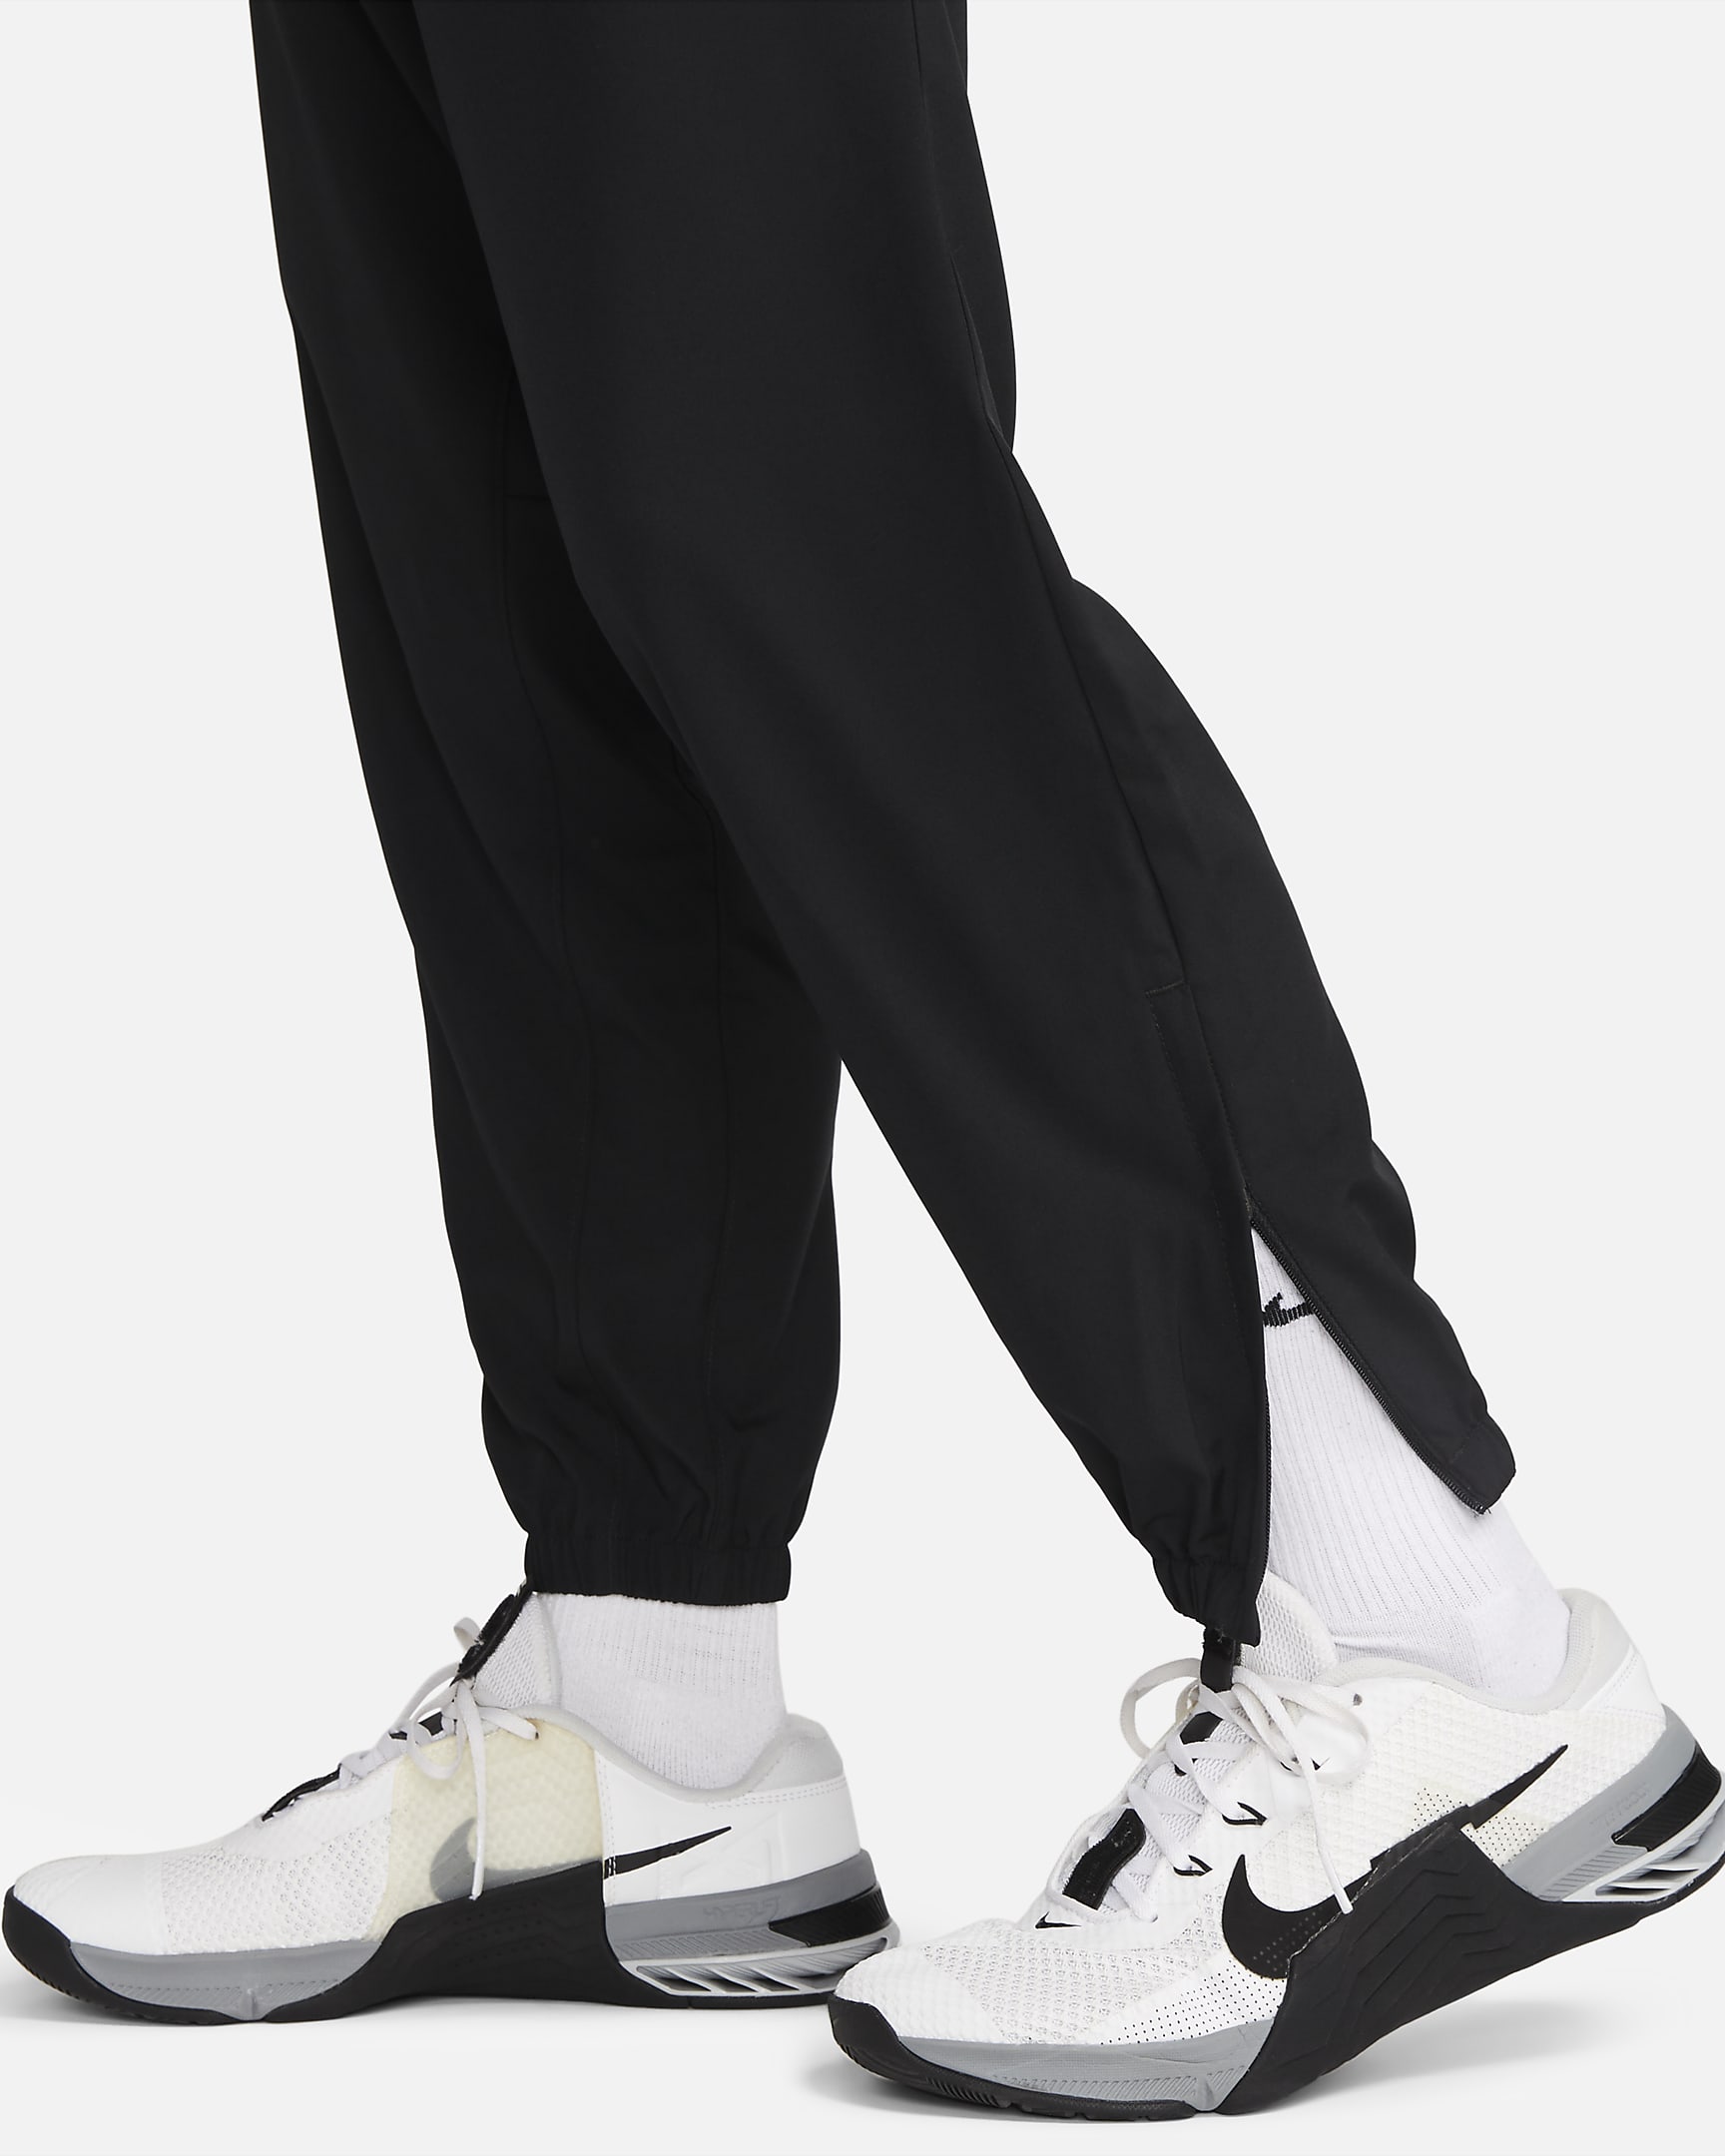 Pantalon fuselé Dri-FIT Nike Form pour homme - Noir/Noir